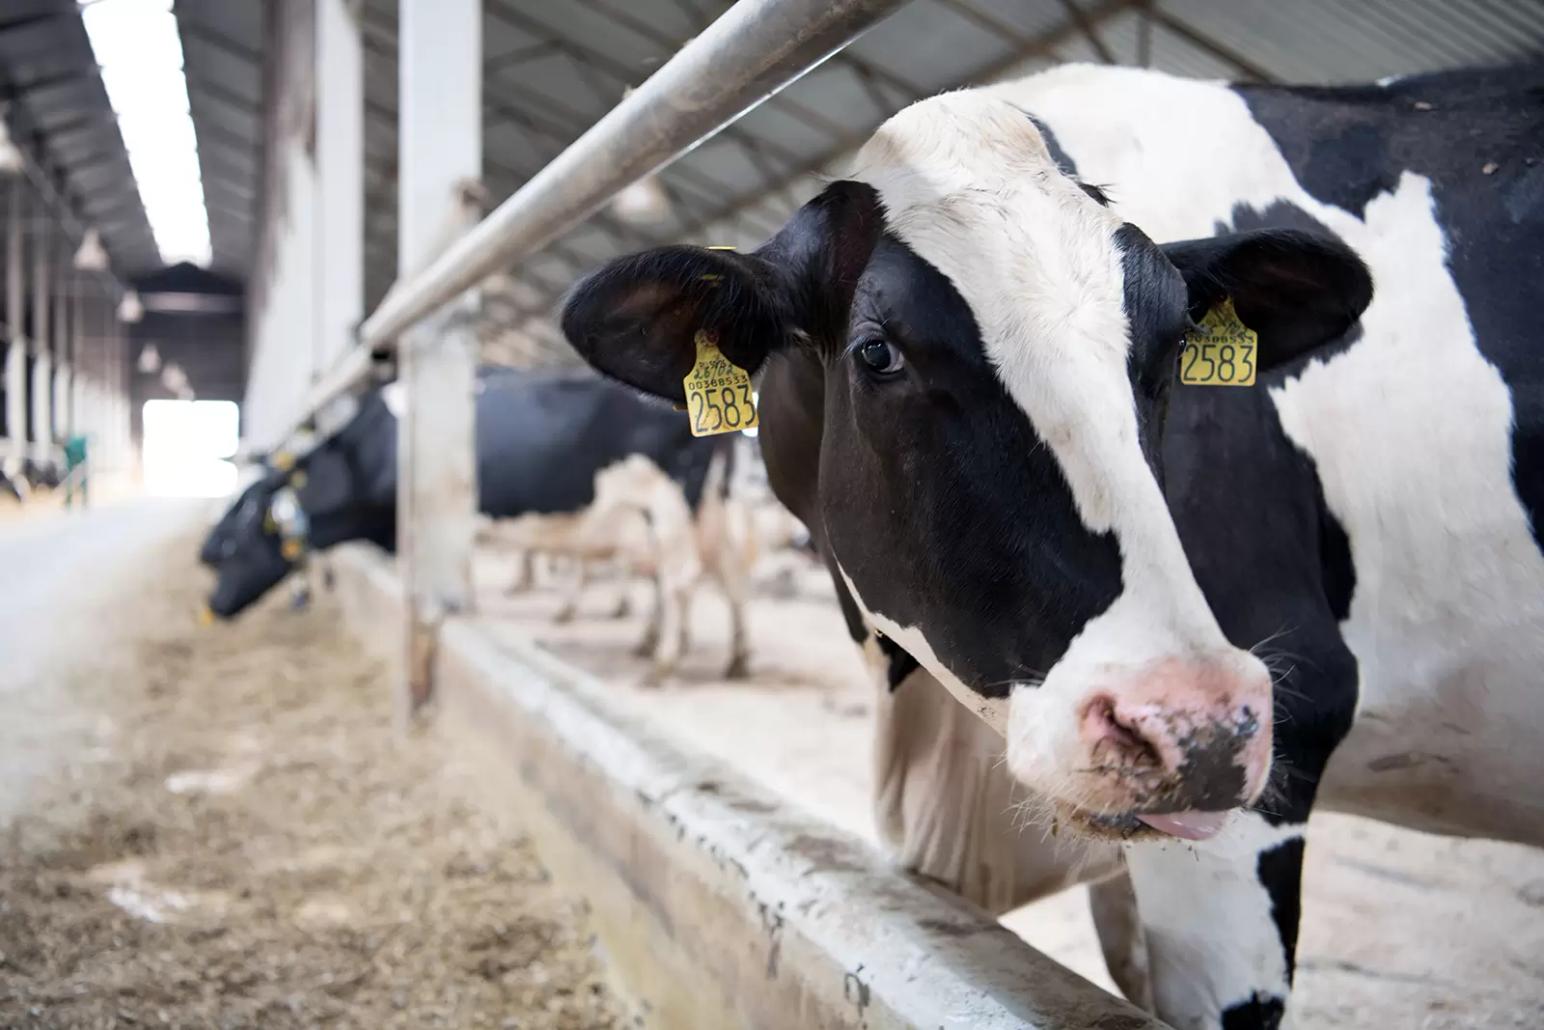 «Умная ферма» проконтролирует животных за счет капсулы с датчиками в их желудке